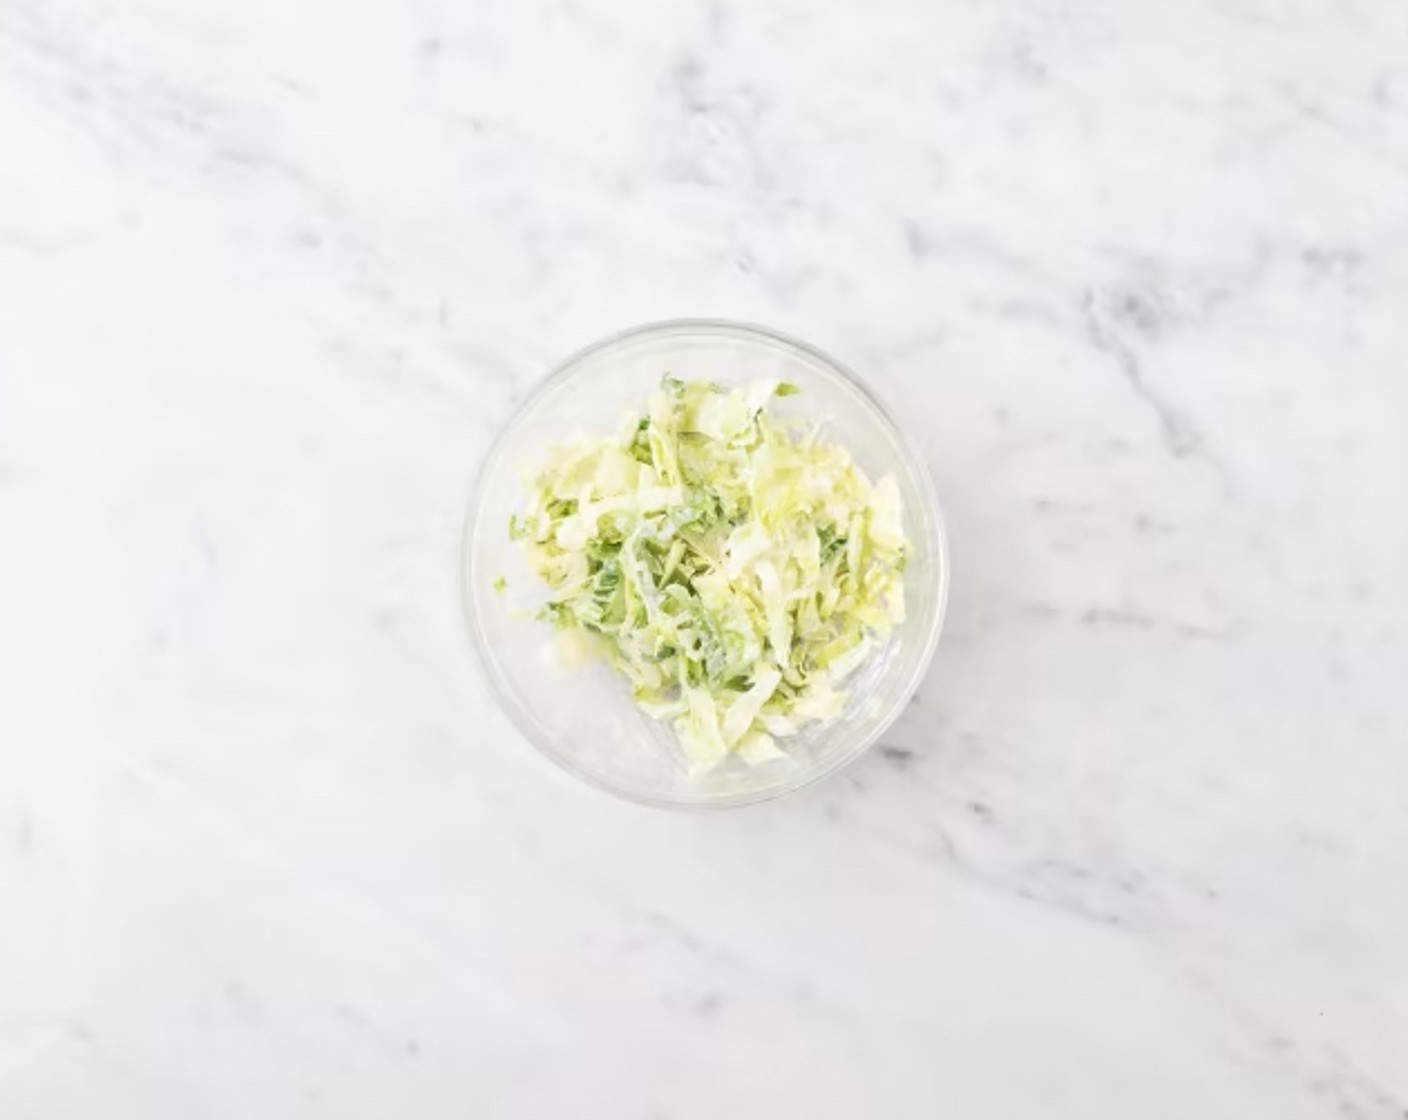 Schritt 6 Salatherzen (340 g) längs halbieren, Strunk entfernen und Salatherz in dünne Streifen schneiden. Salat in eine grosse Schüssel geben und mit dem Zitronen-Buttermilch Dressing (100 ml) vermengen.